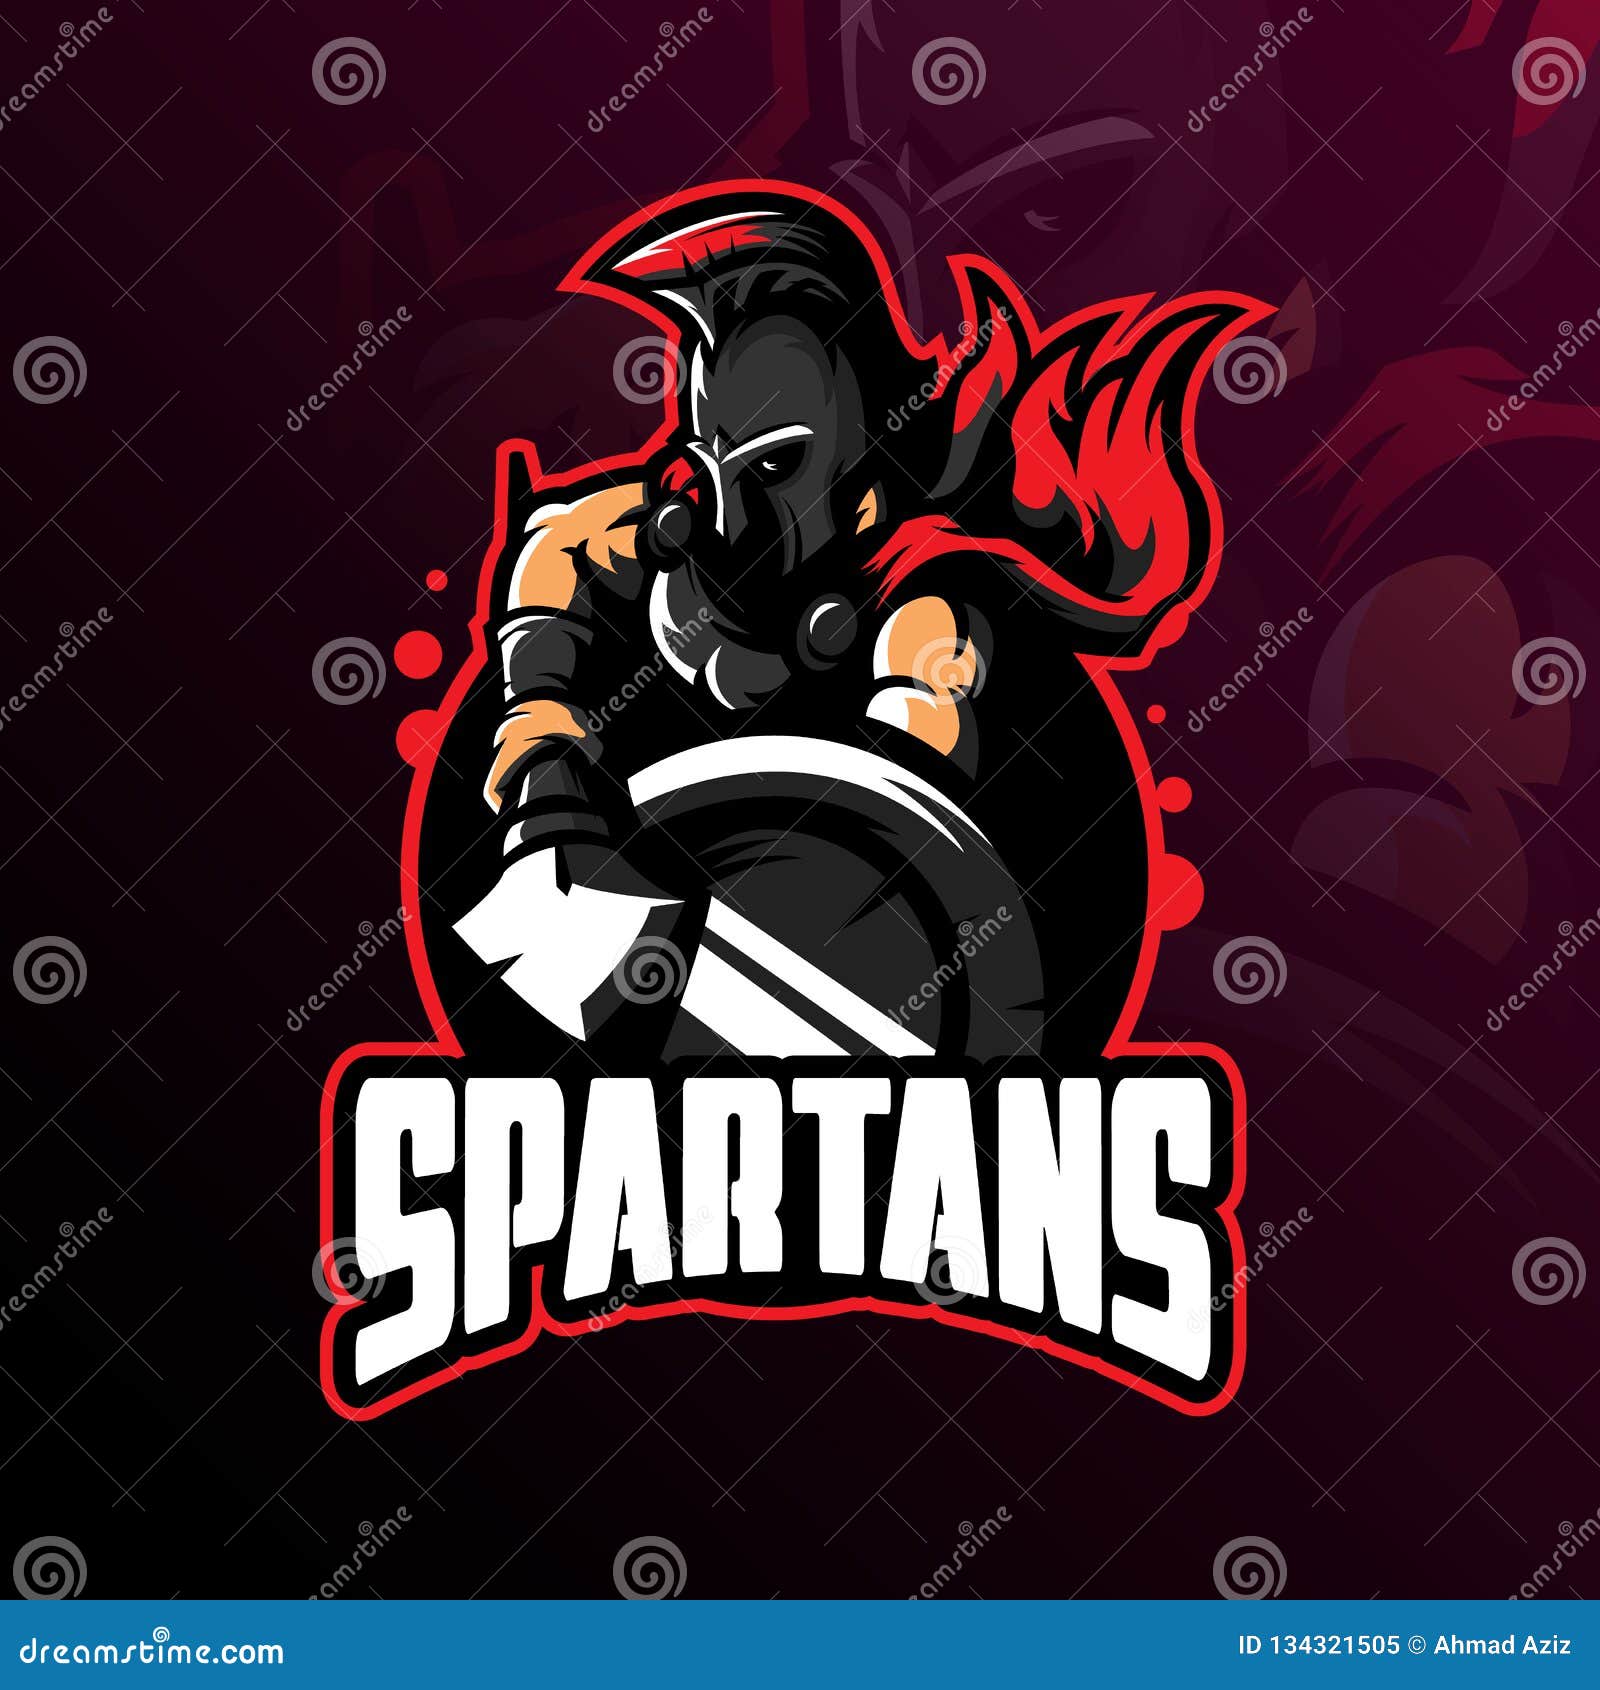 Spartan Mascot Cartoon Vector | CartoonDealer.com #49301273